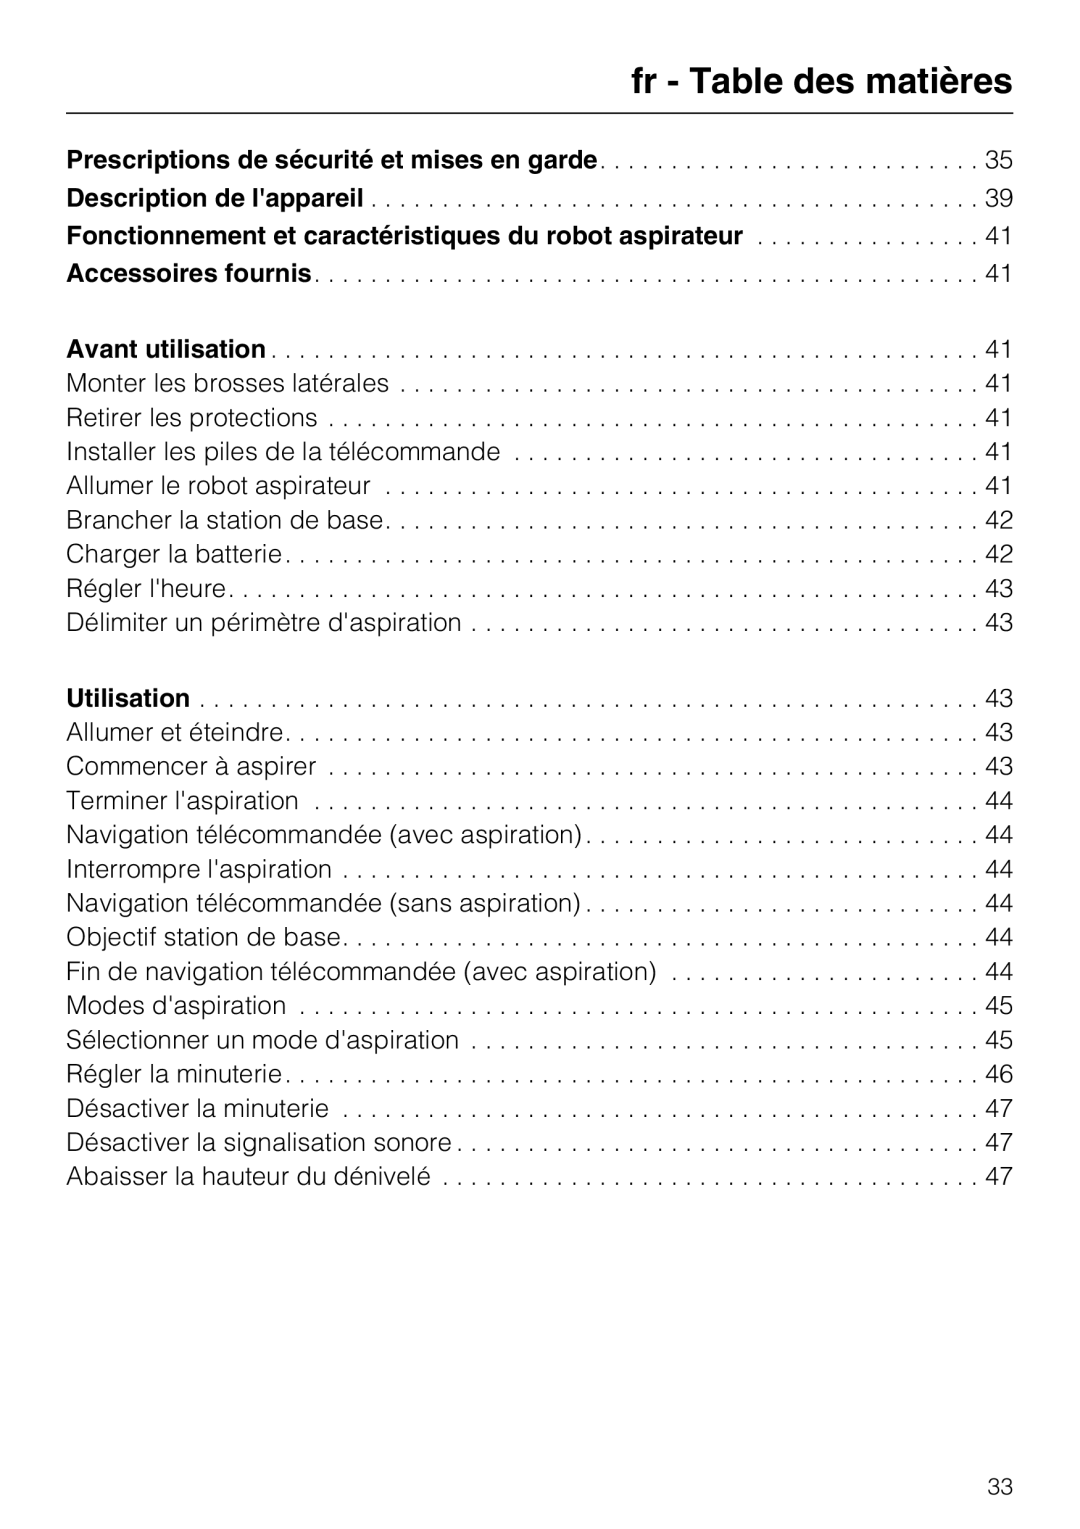 Miele HS17 manual fr - Table des matières 